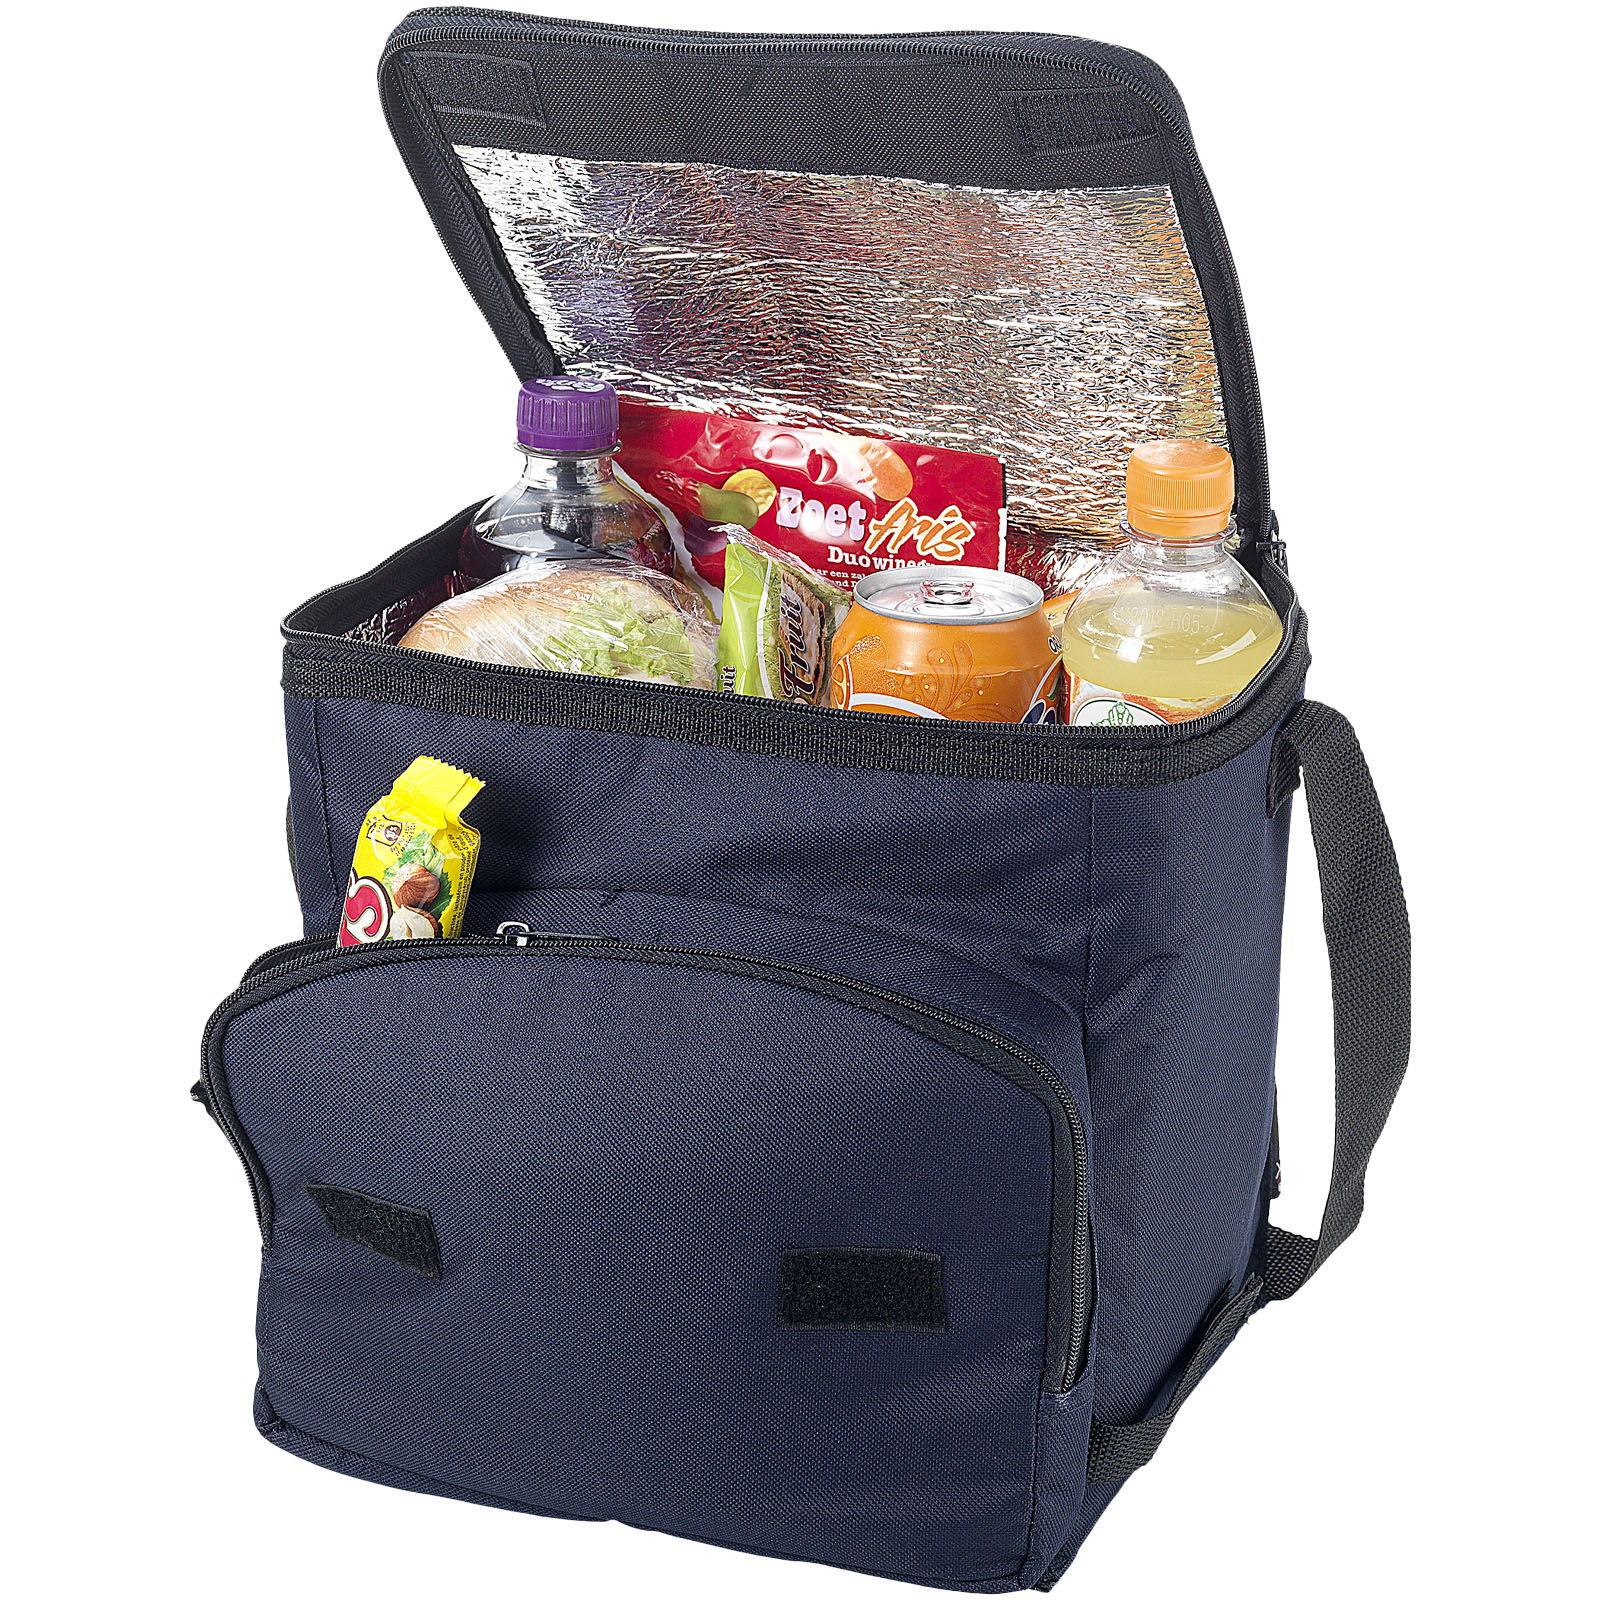 Bags - Stockholm foldable cooler bag 10L